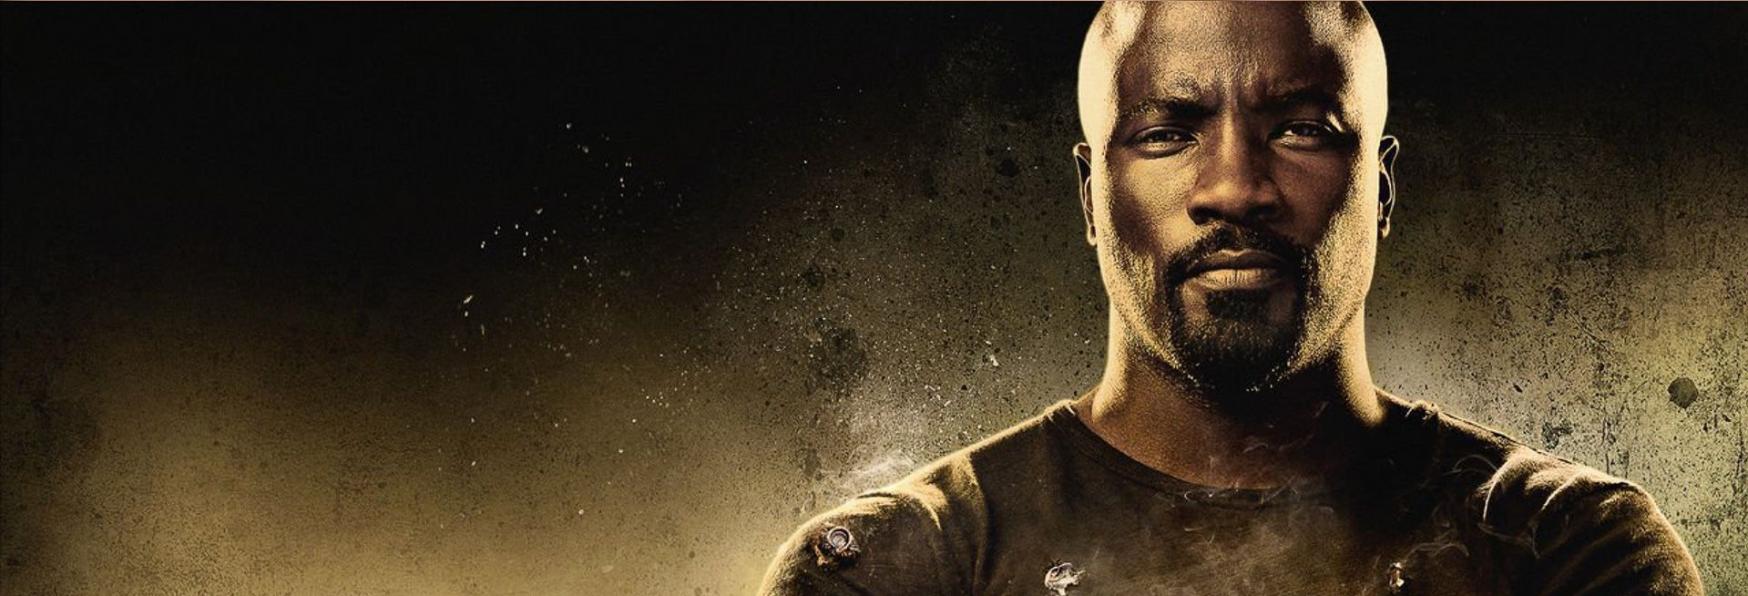 The Defenders: Mike Colter (Luke Cage) risponde ai Rumor sul Revival della Serie TV